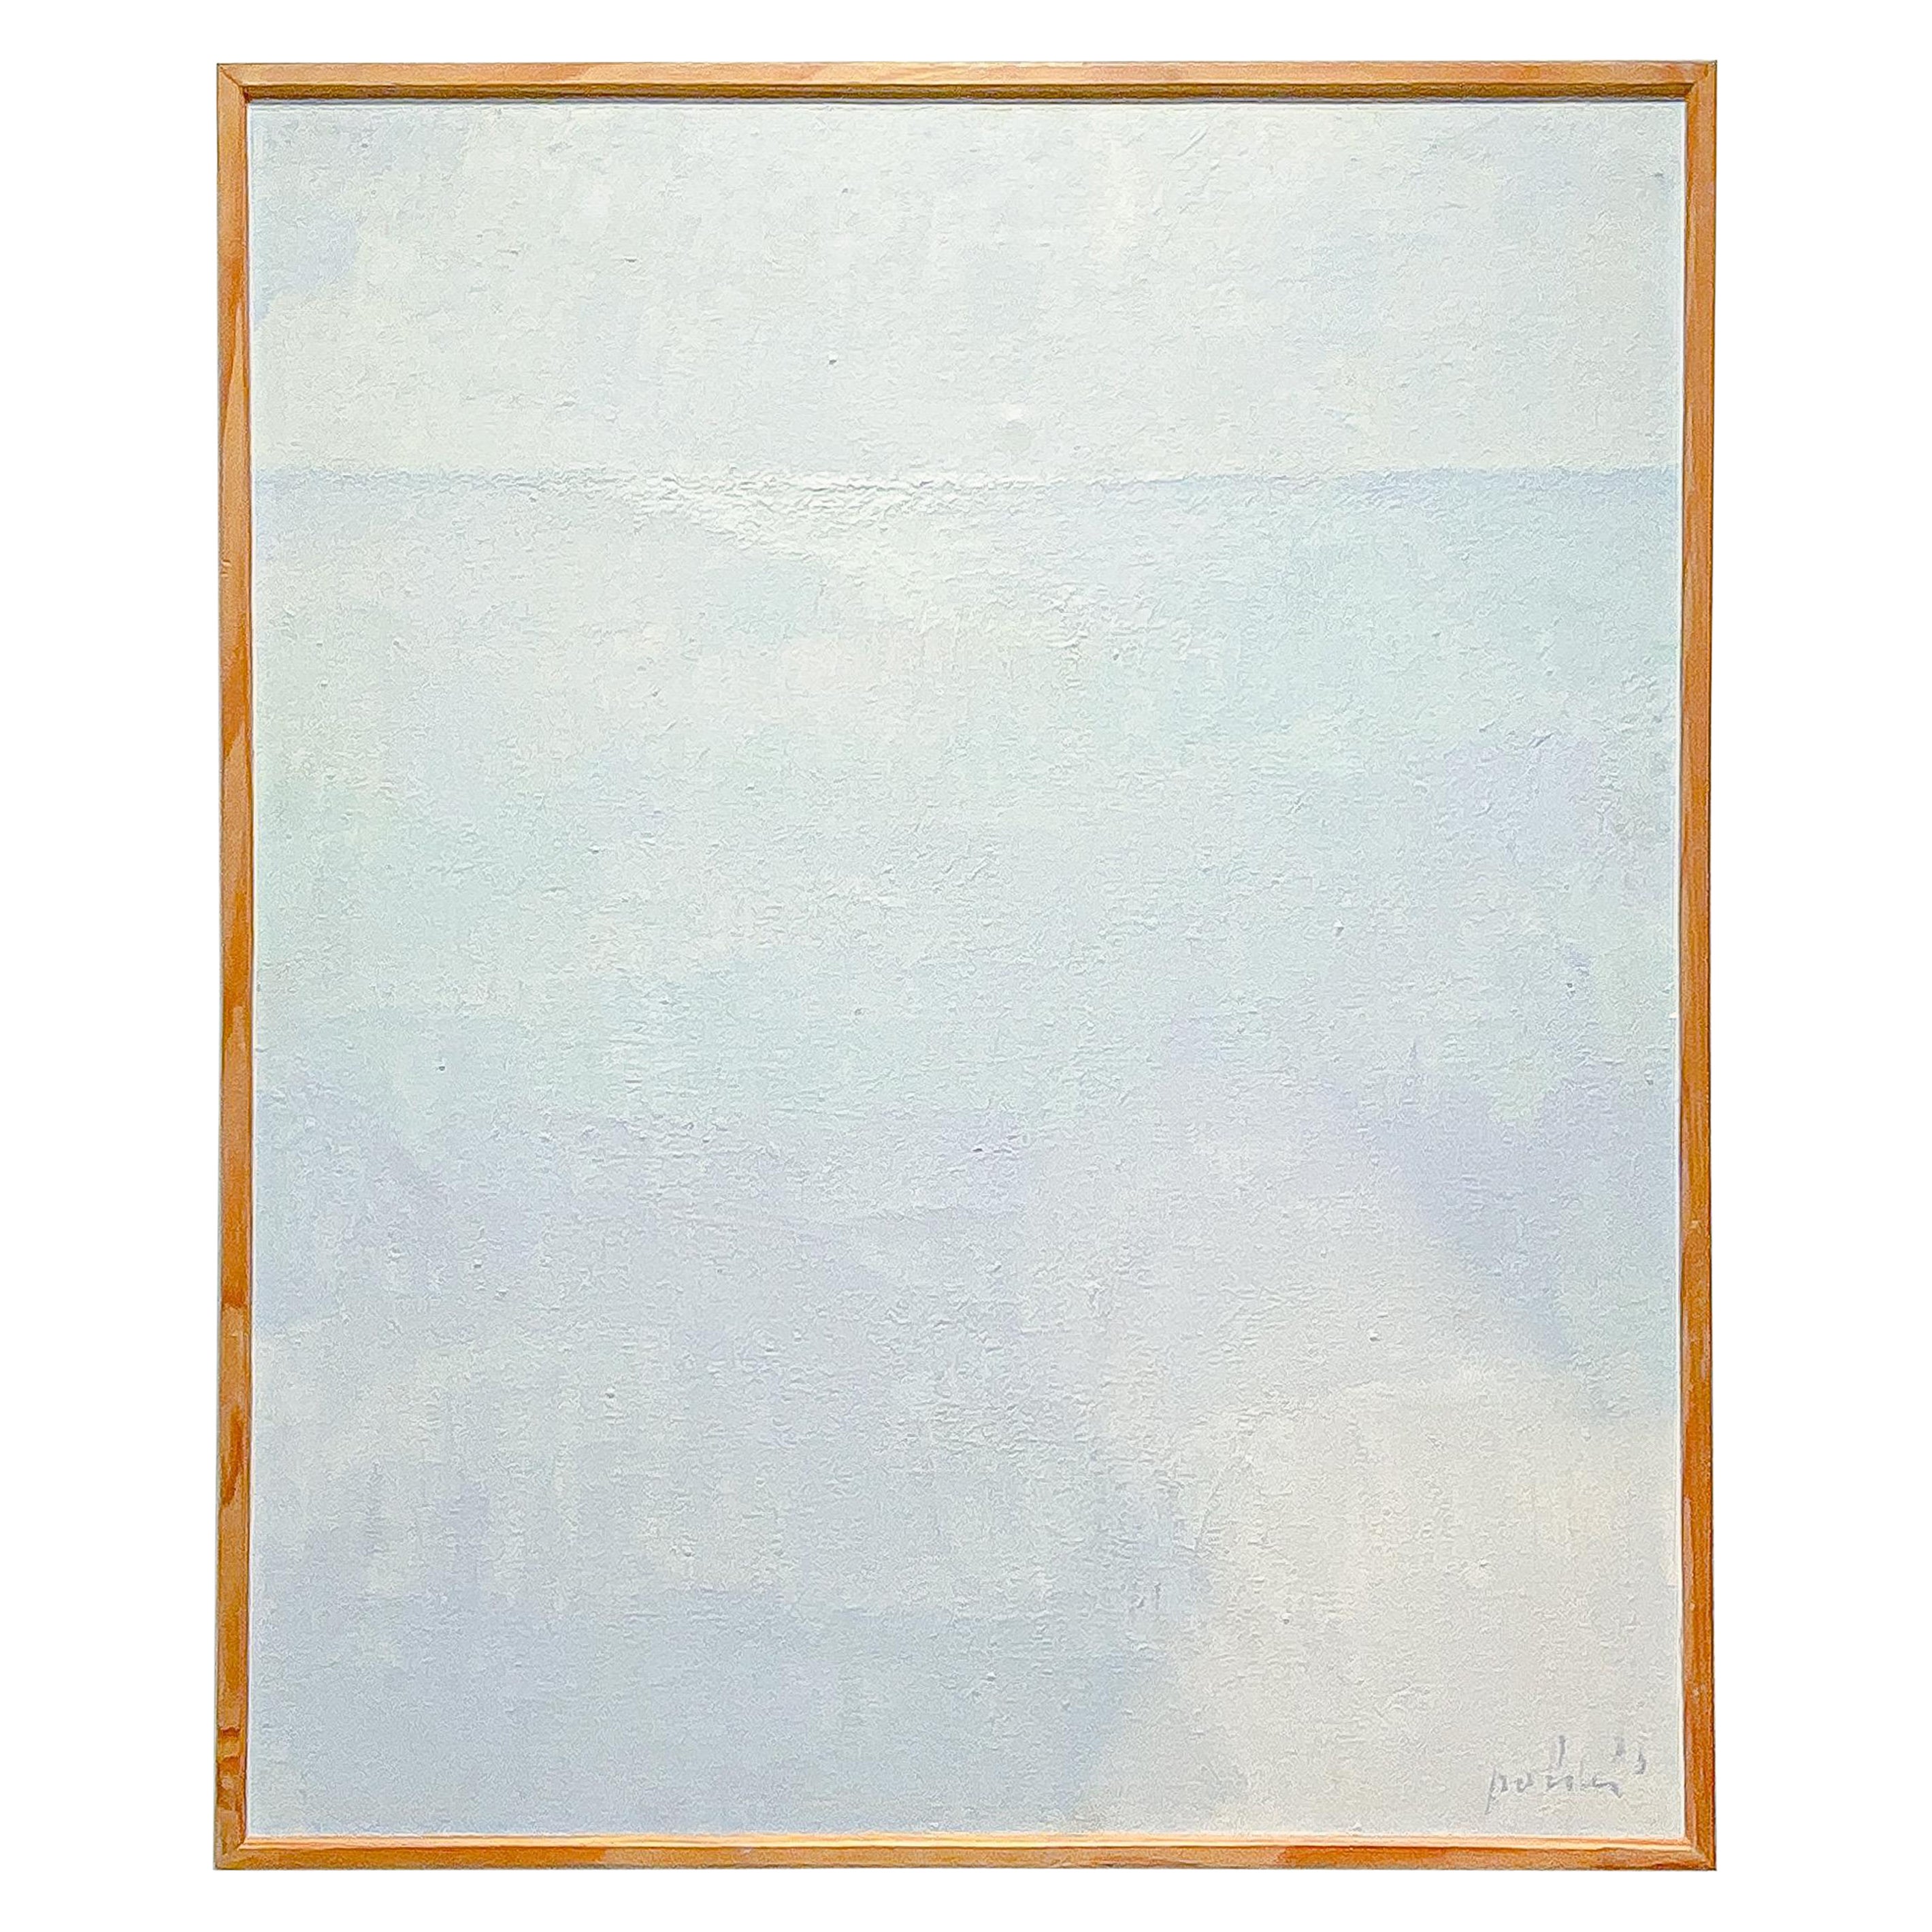 Rudi Polder, “Light on See”, Luminist Painting, 1980s Blue Tones